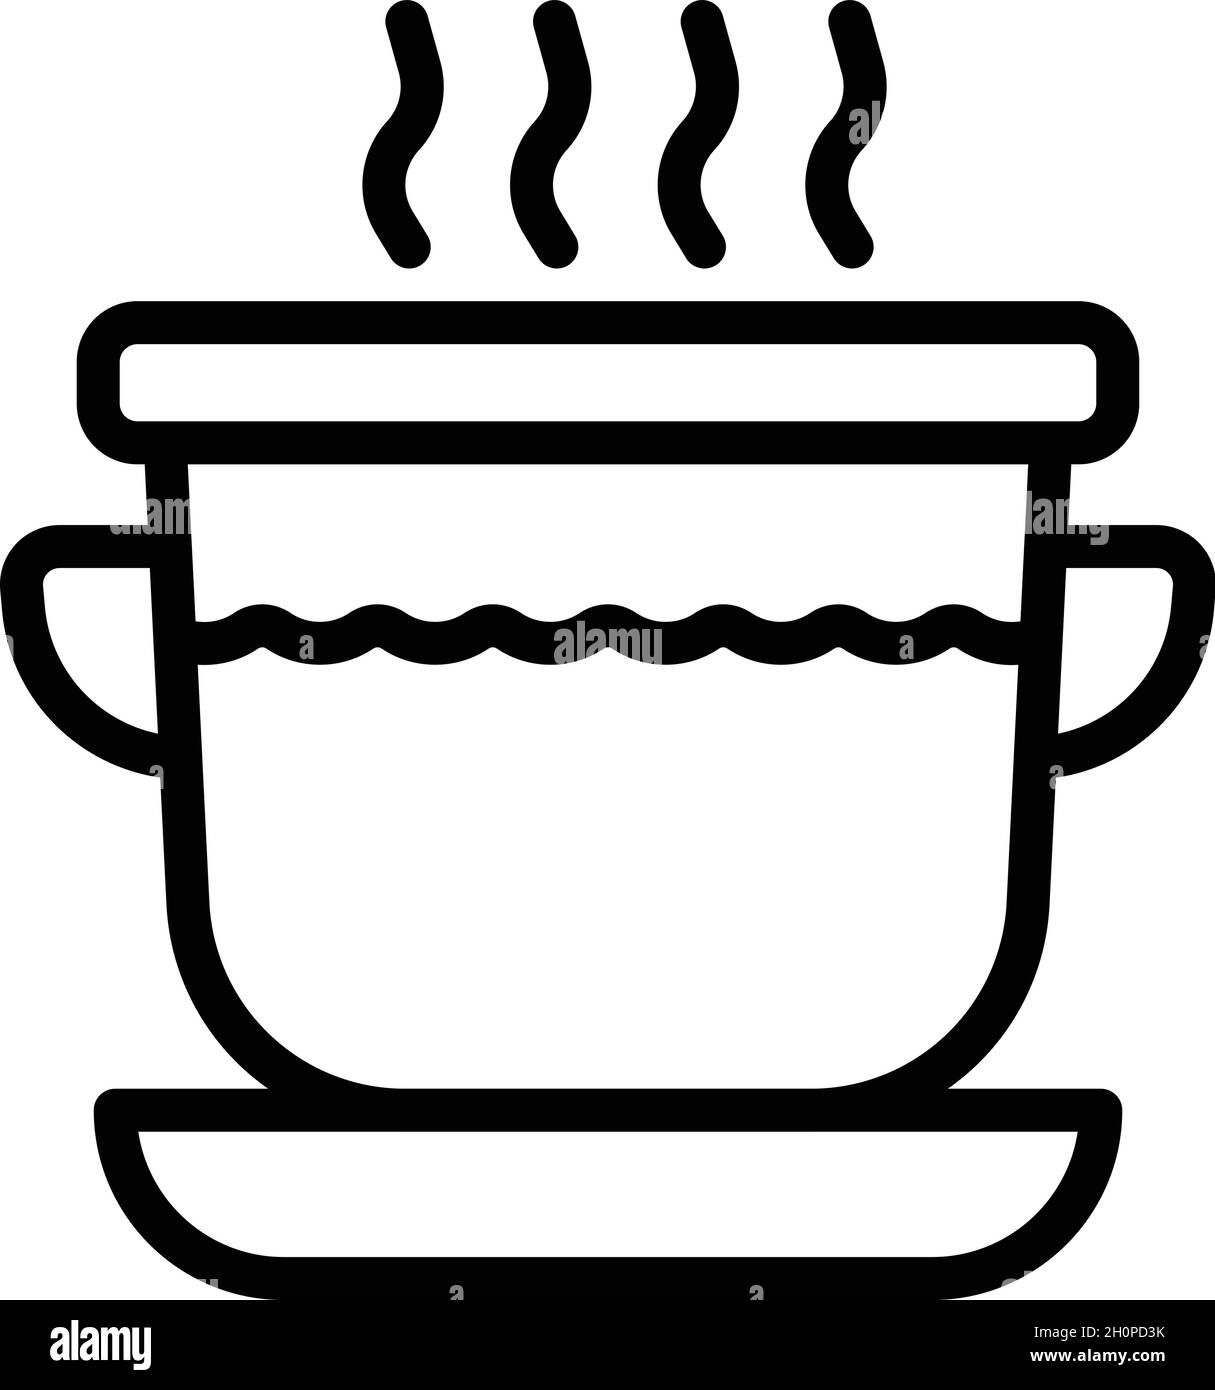 Vecteur de contour de l'icône de soupe de crème fraîche.Plat aux champignons.Poulet chaud Illustration de Vecteur